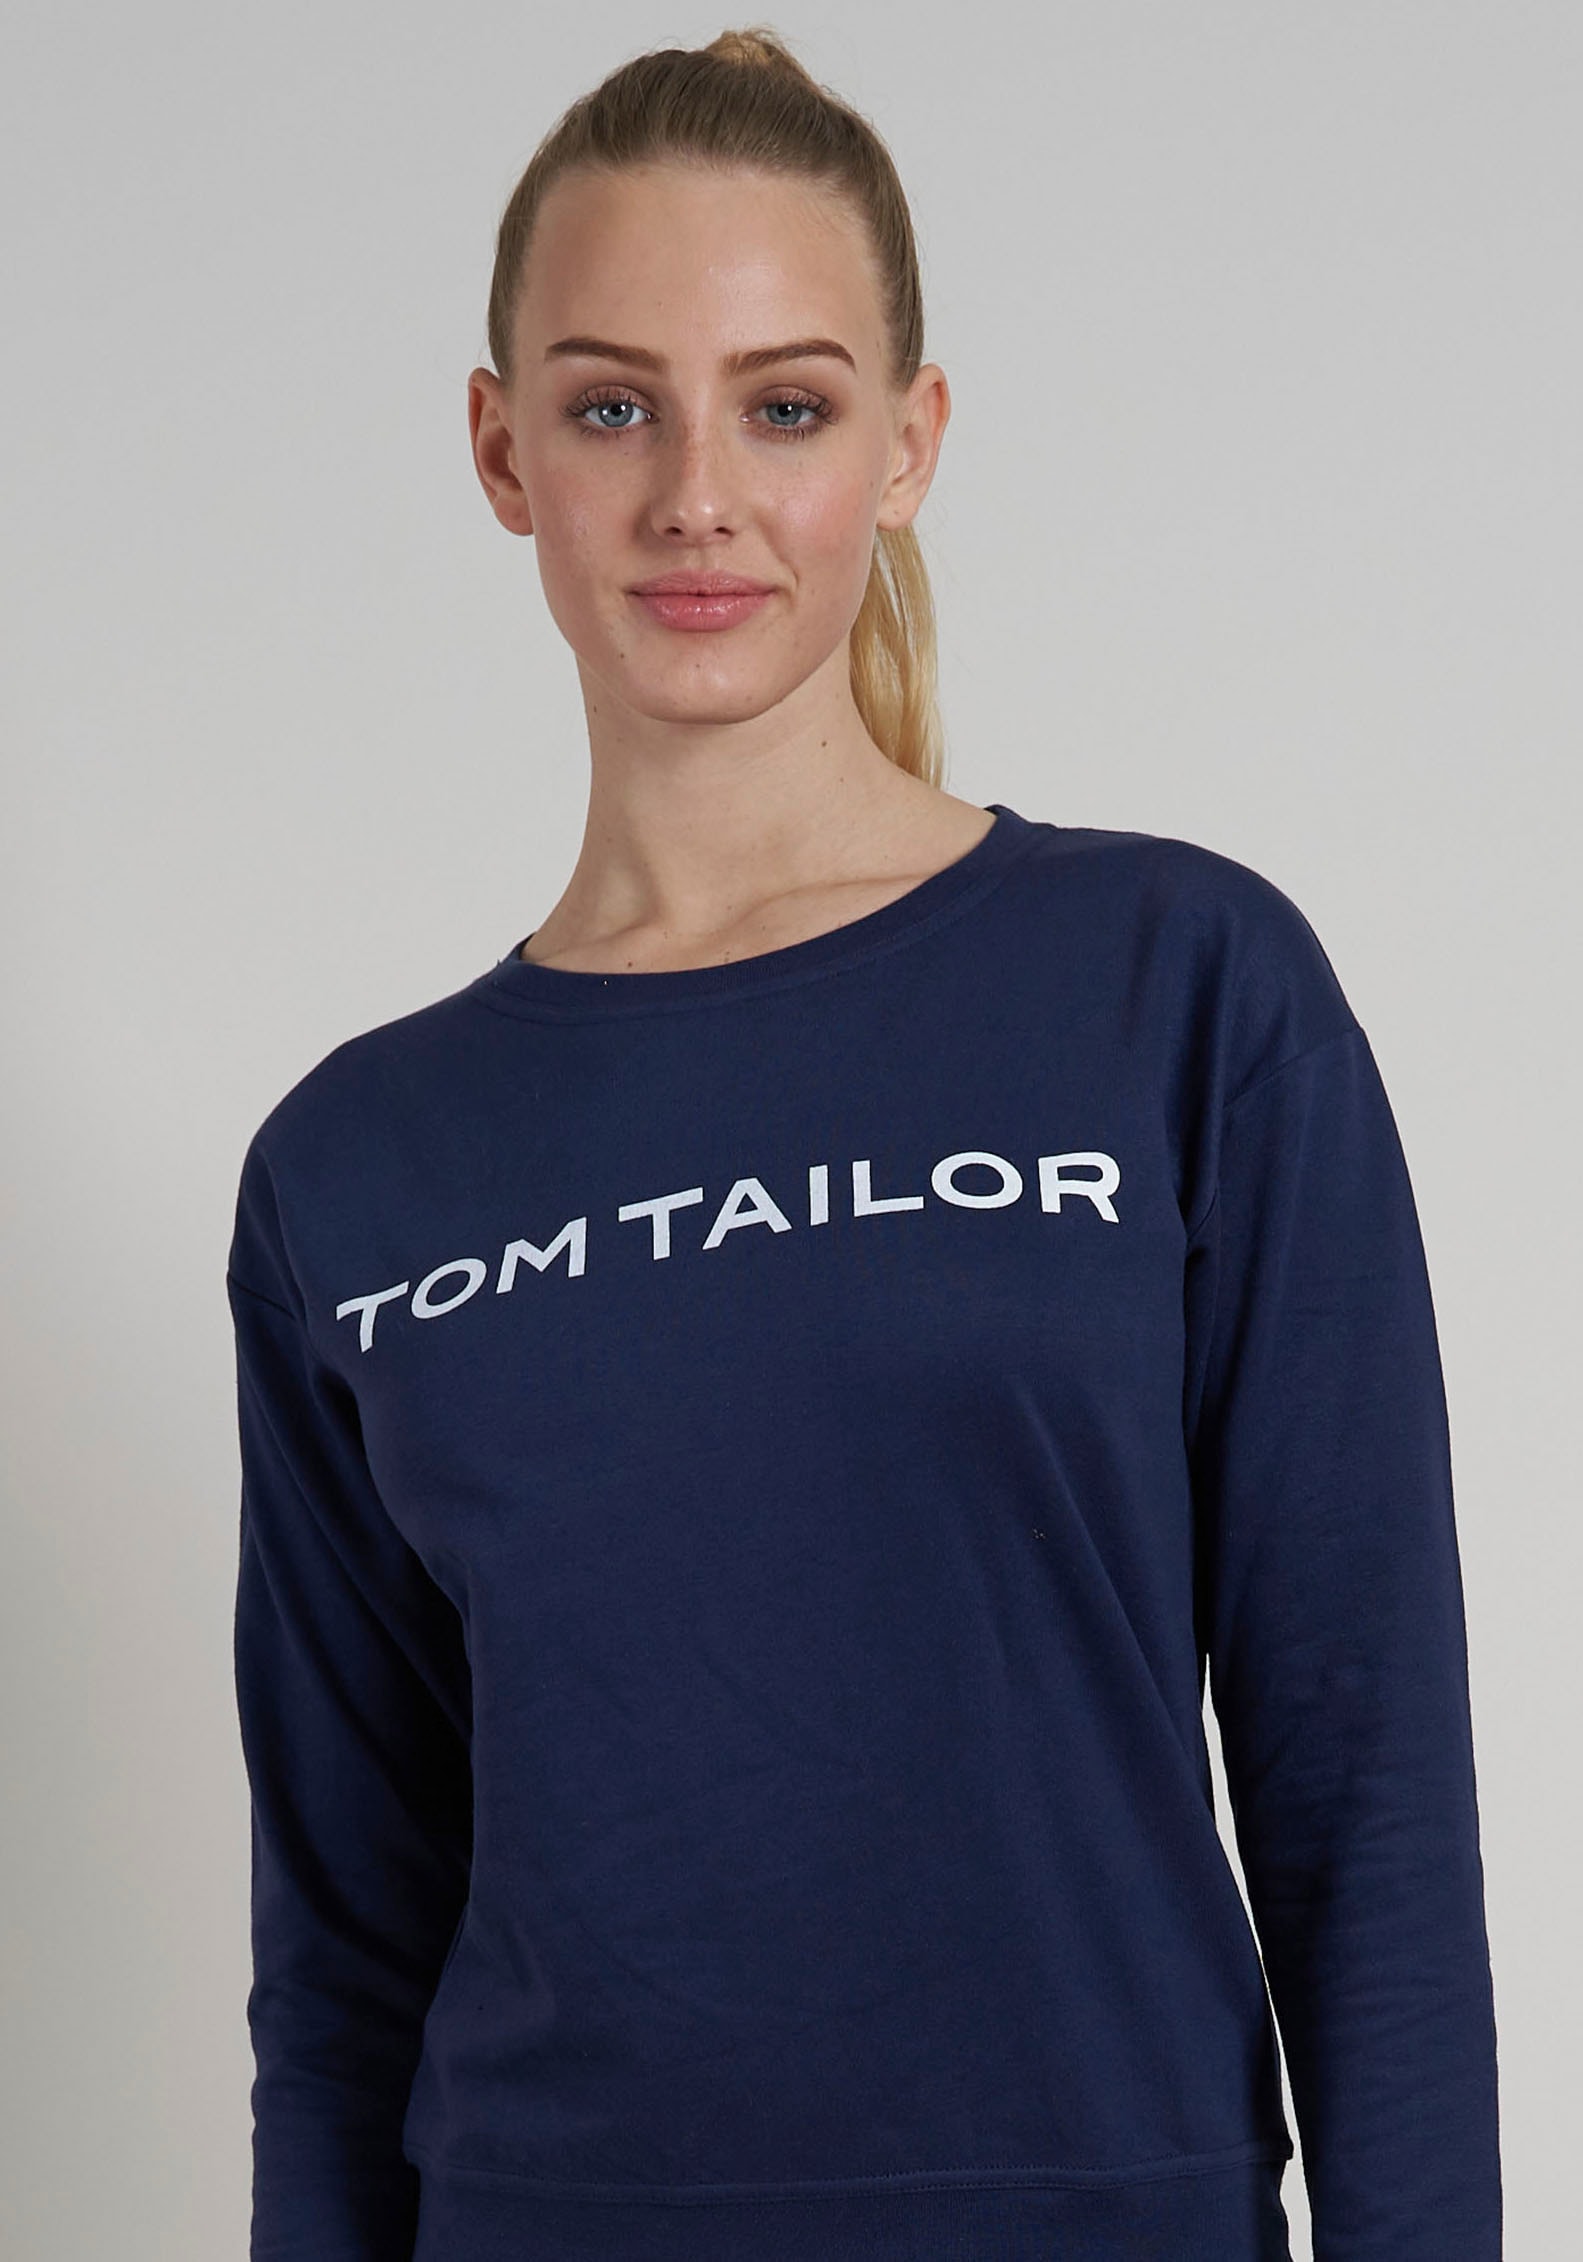 TOM TAILOR Sweatshirt, mit Basic Fit, verziert durch Logoschriftzug